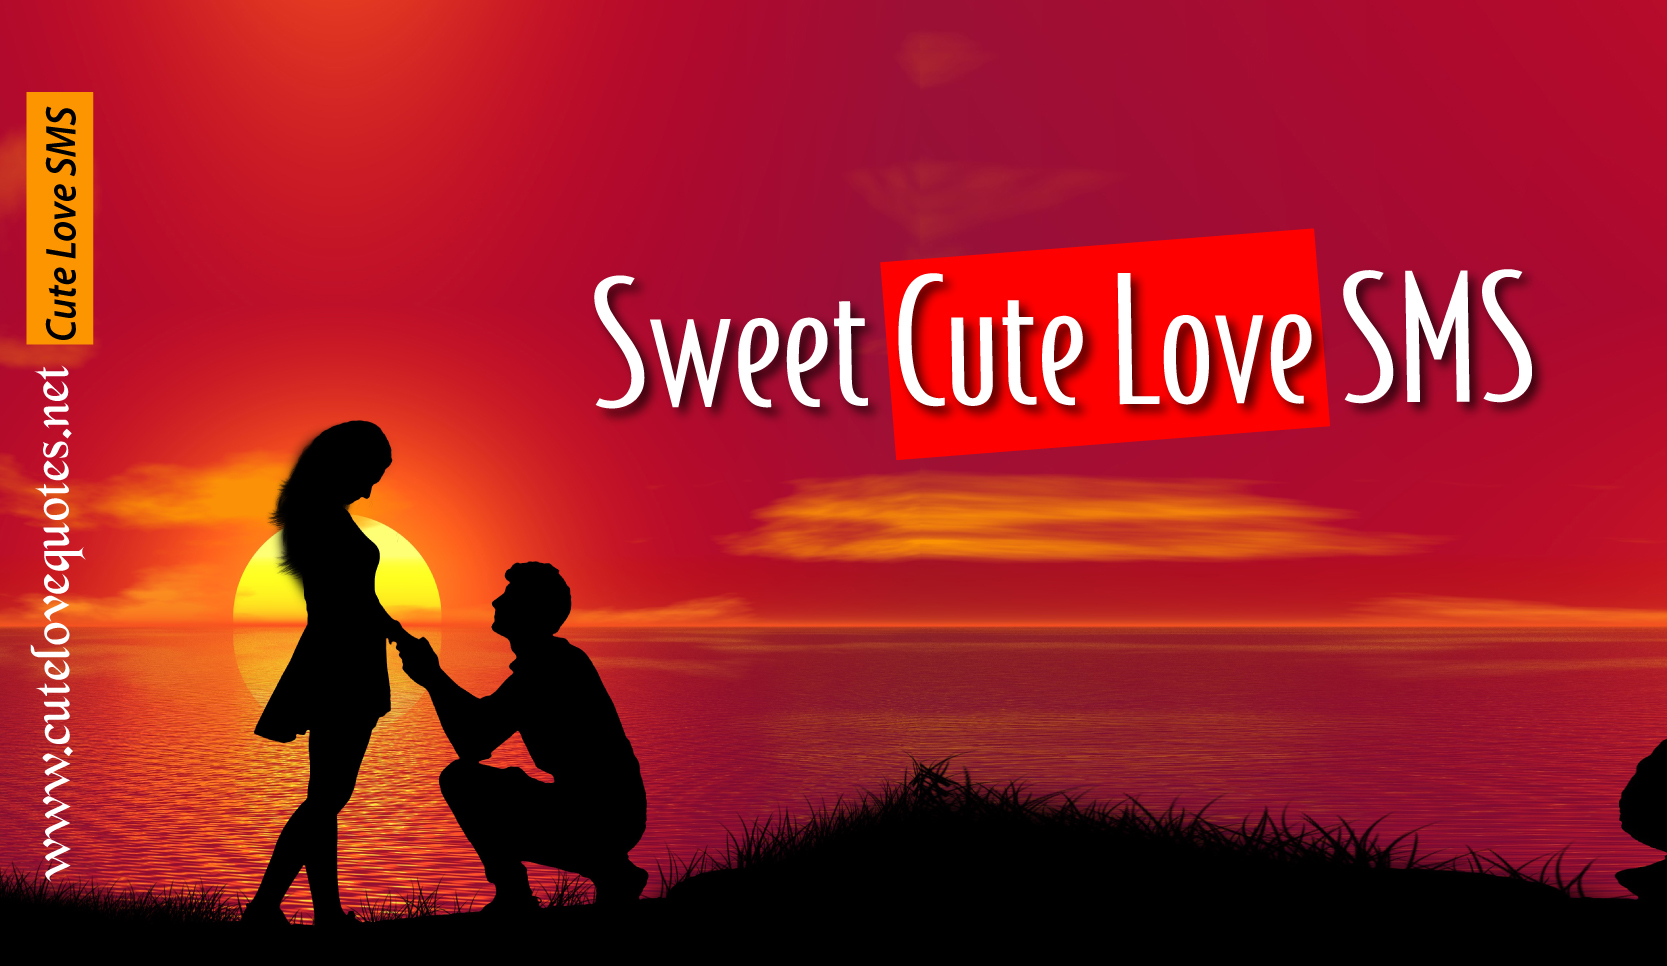 Sweet Cute Love SMS